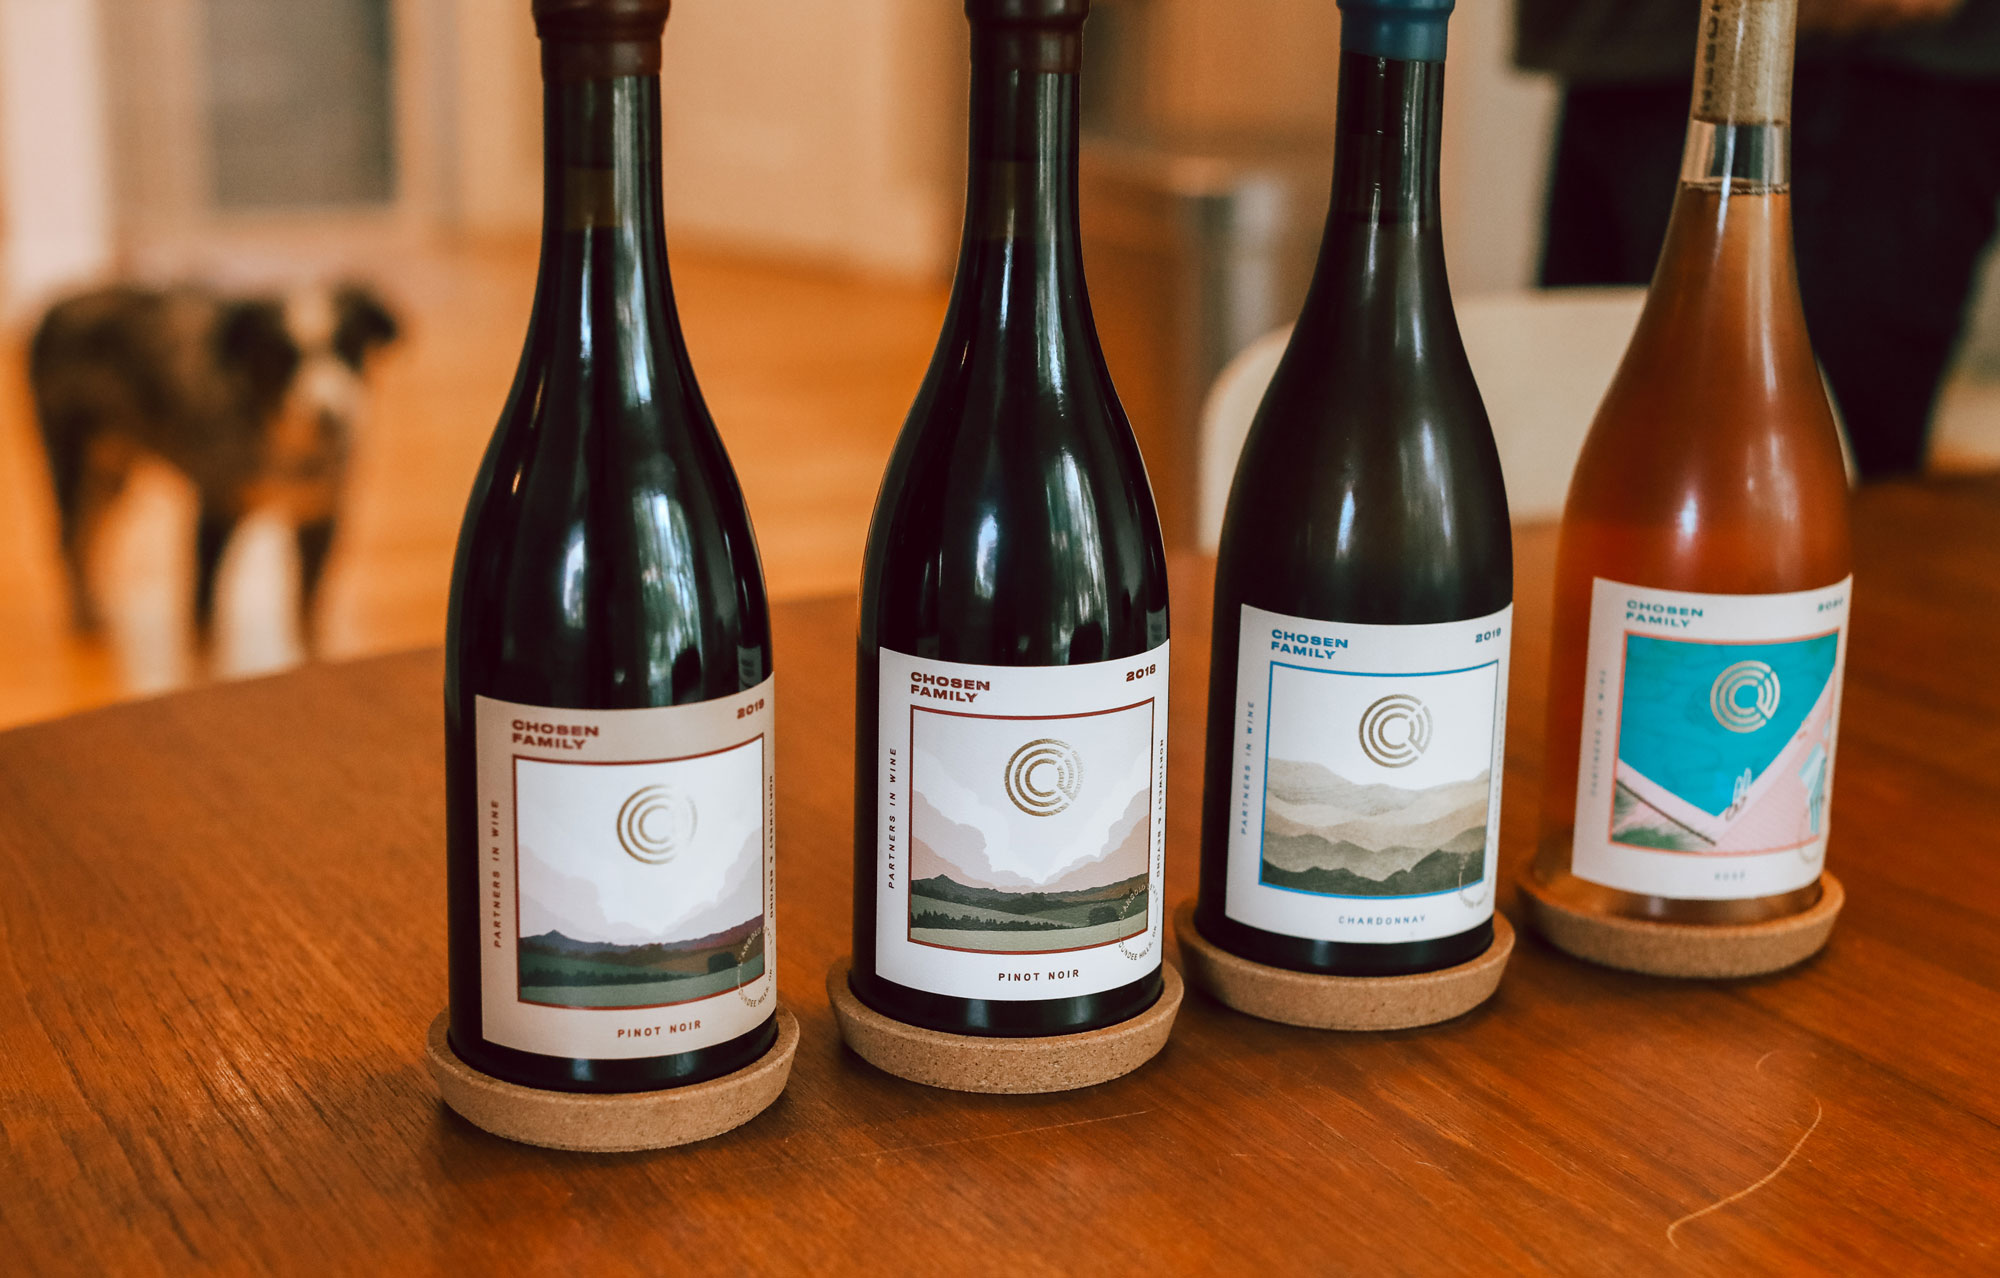 Lineup of Chosen Family Wine bottles